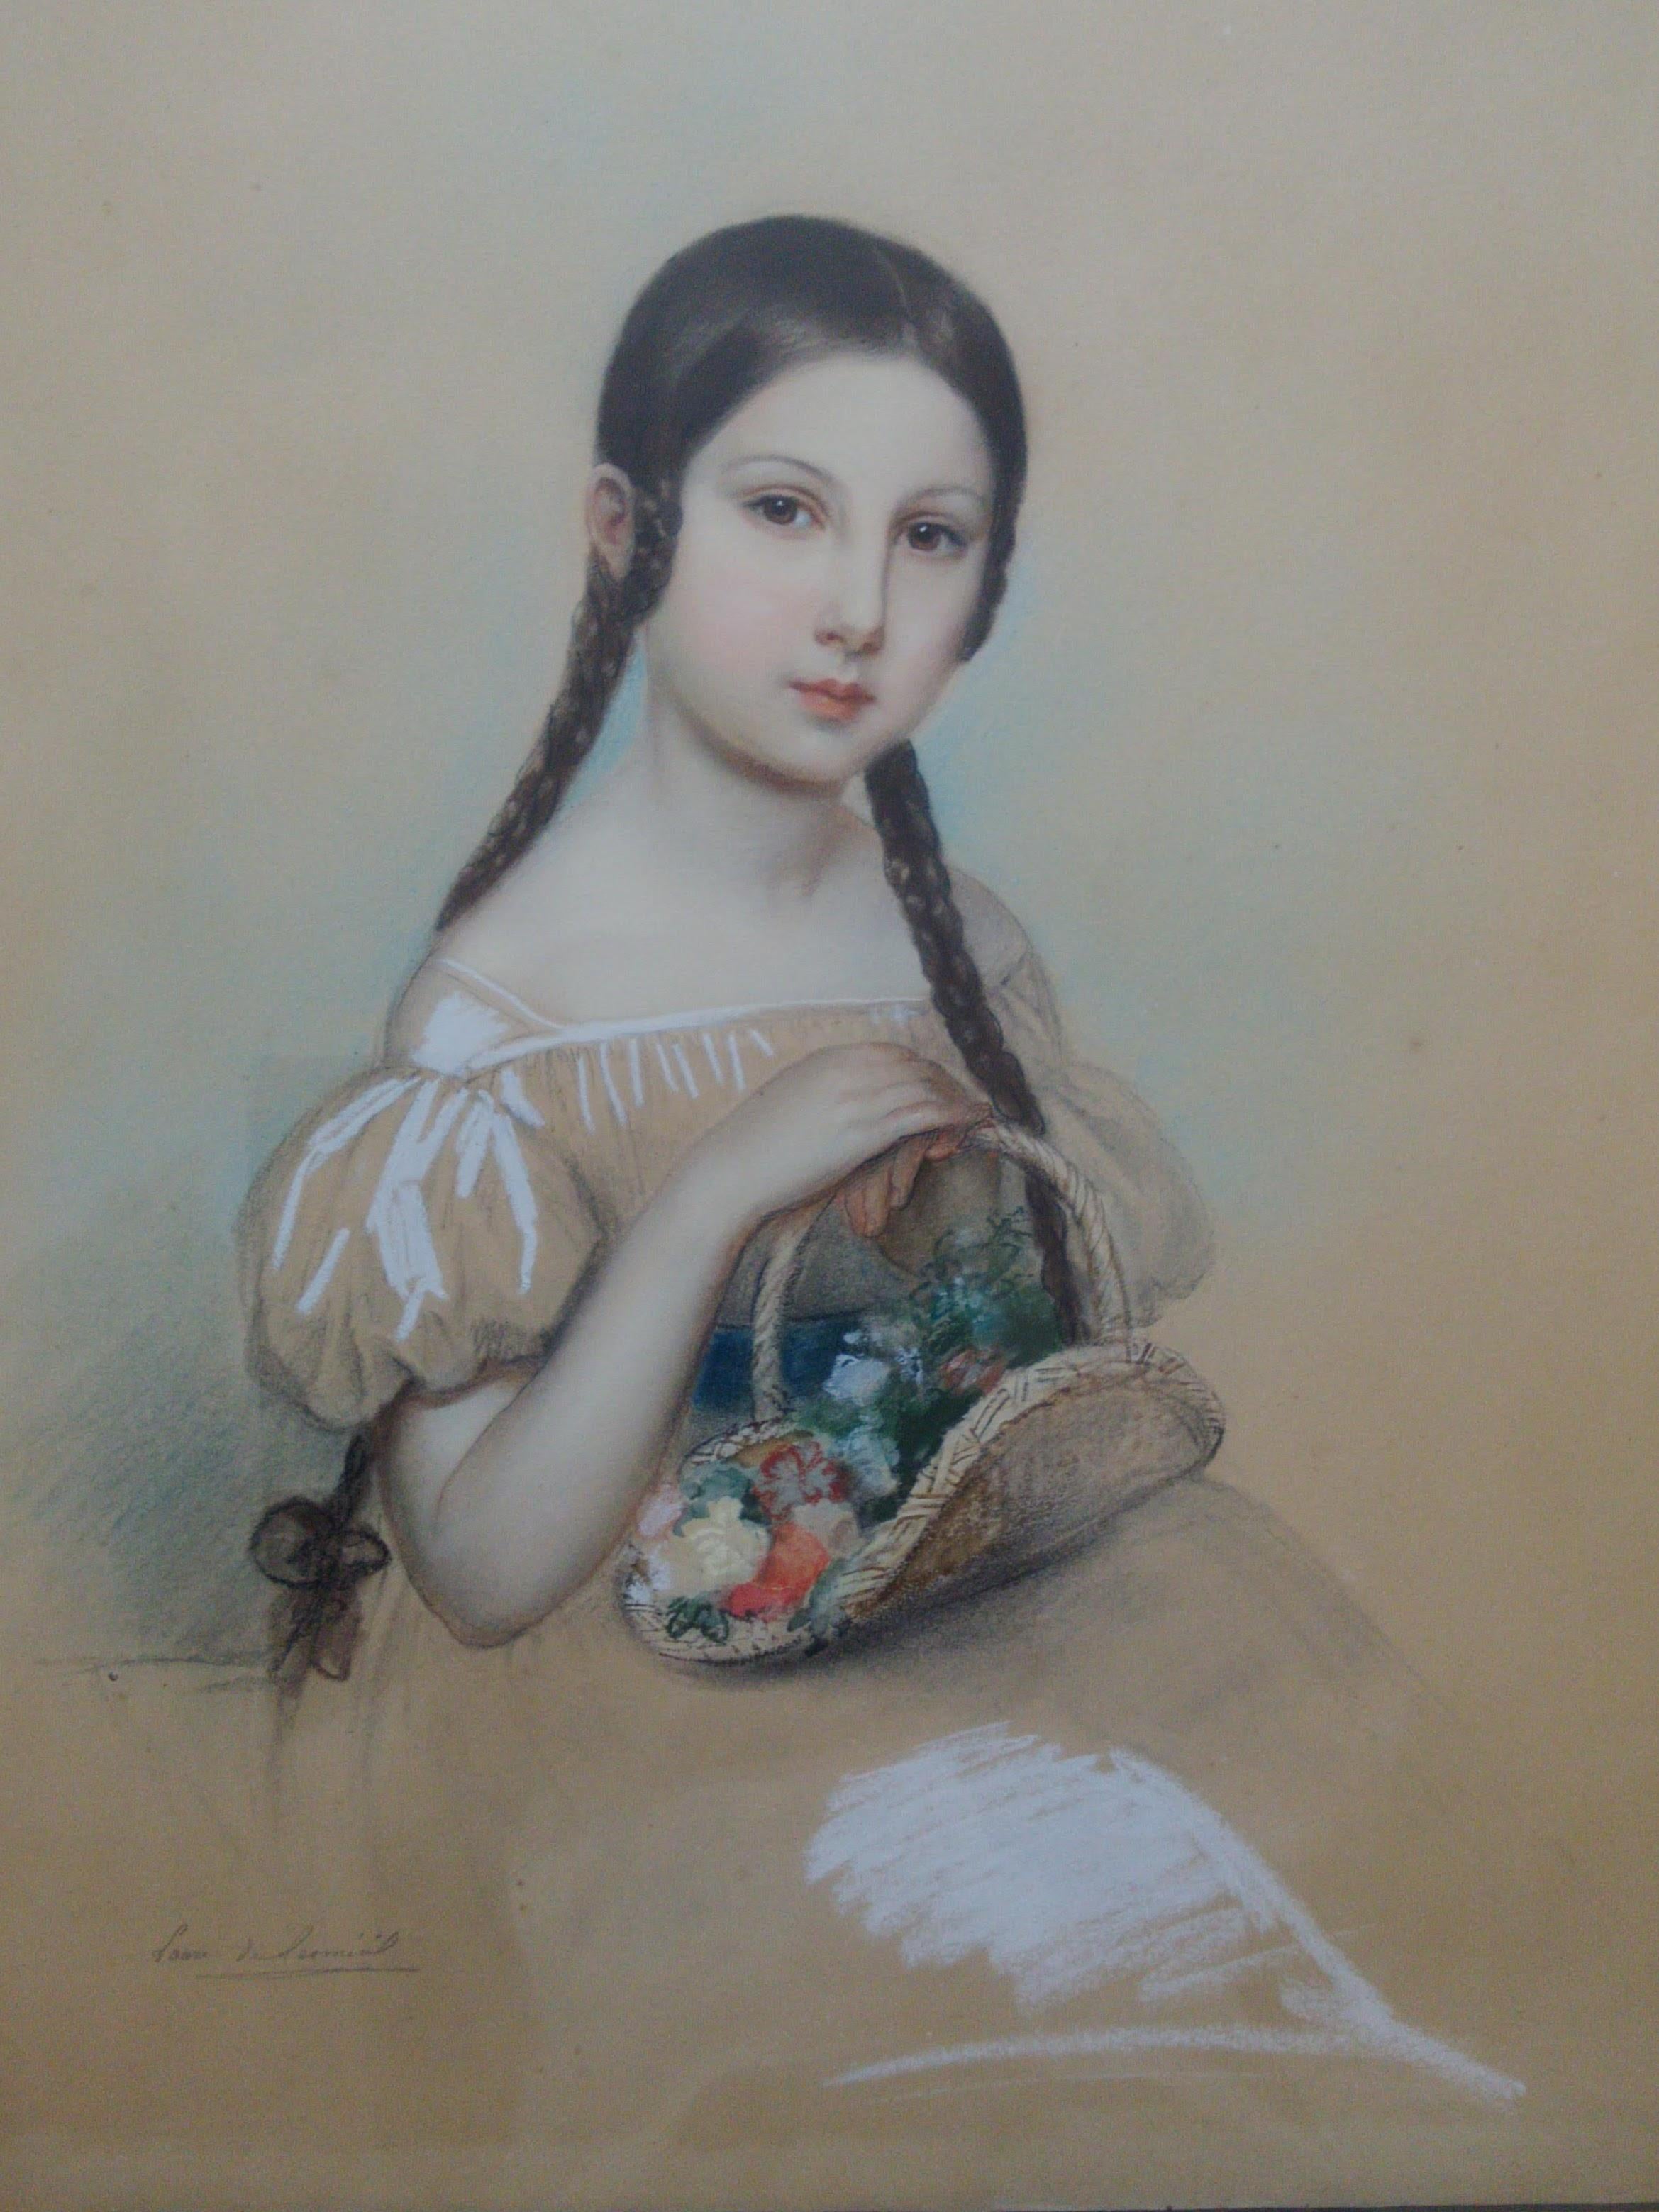 Laure Houssaye de Leomenil Portrait Painting - 19th Century royal portraitist de Leomenil: Little Girl with Flower Basket